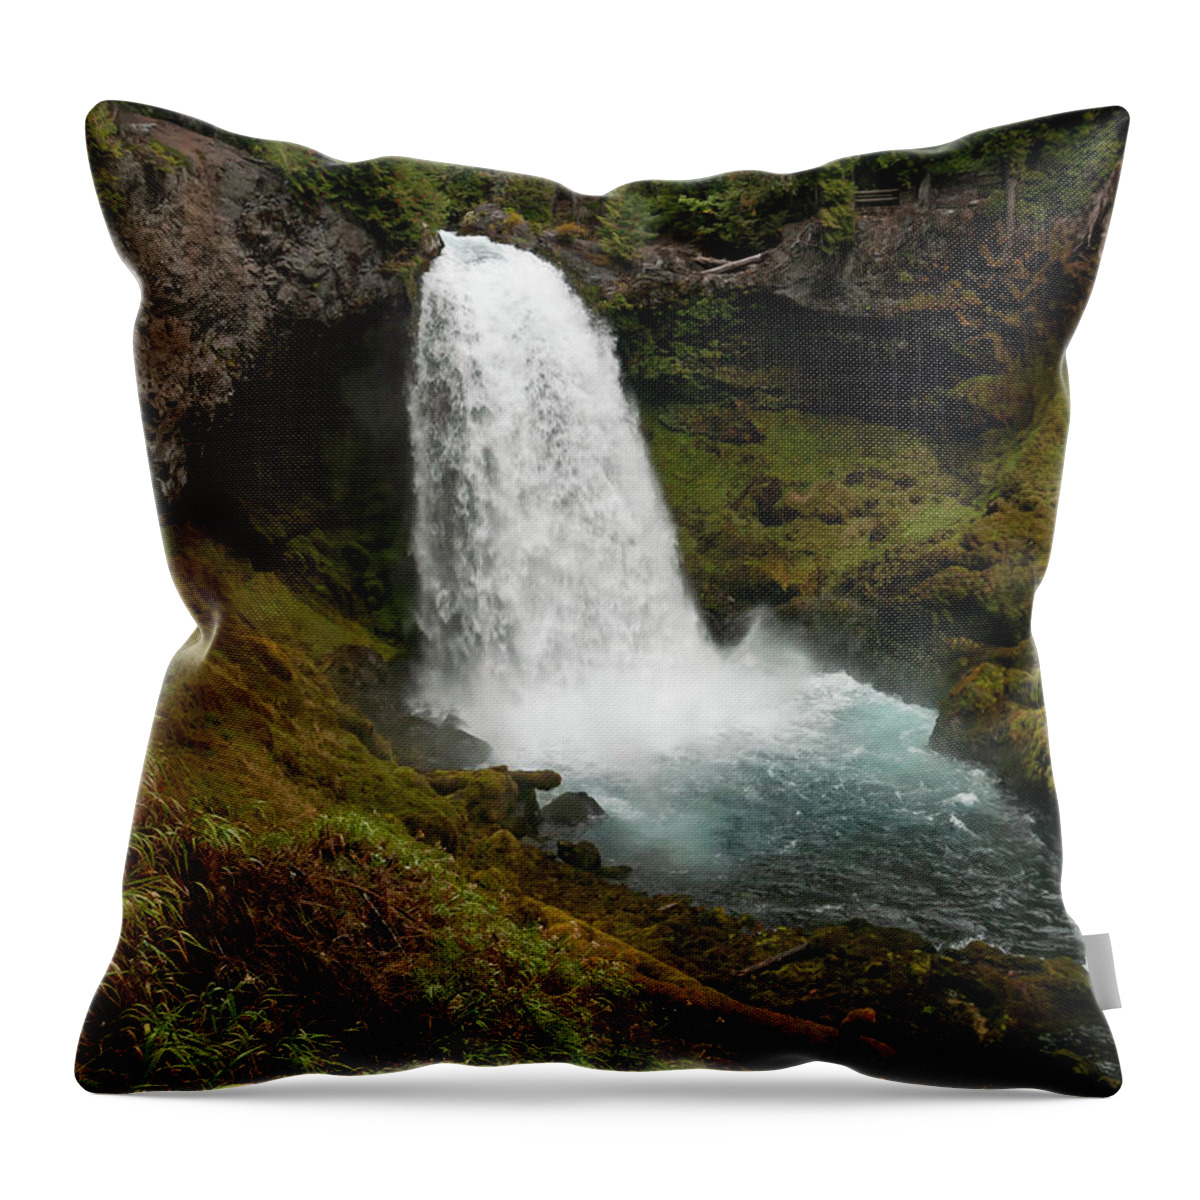 Mckenzie River Throw Pillow featuring the photograph Sahalie Falls by Steven Clark